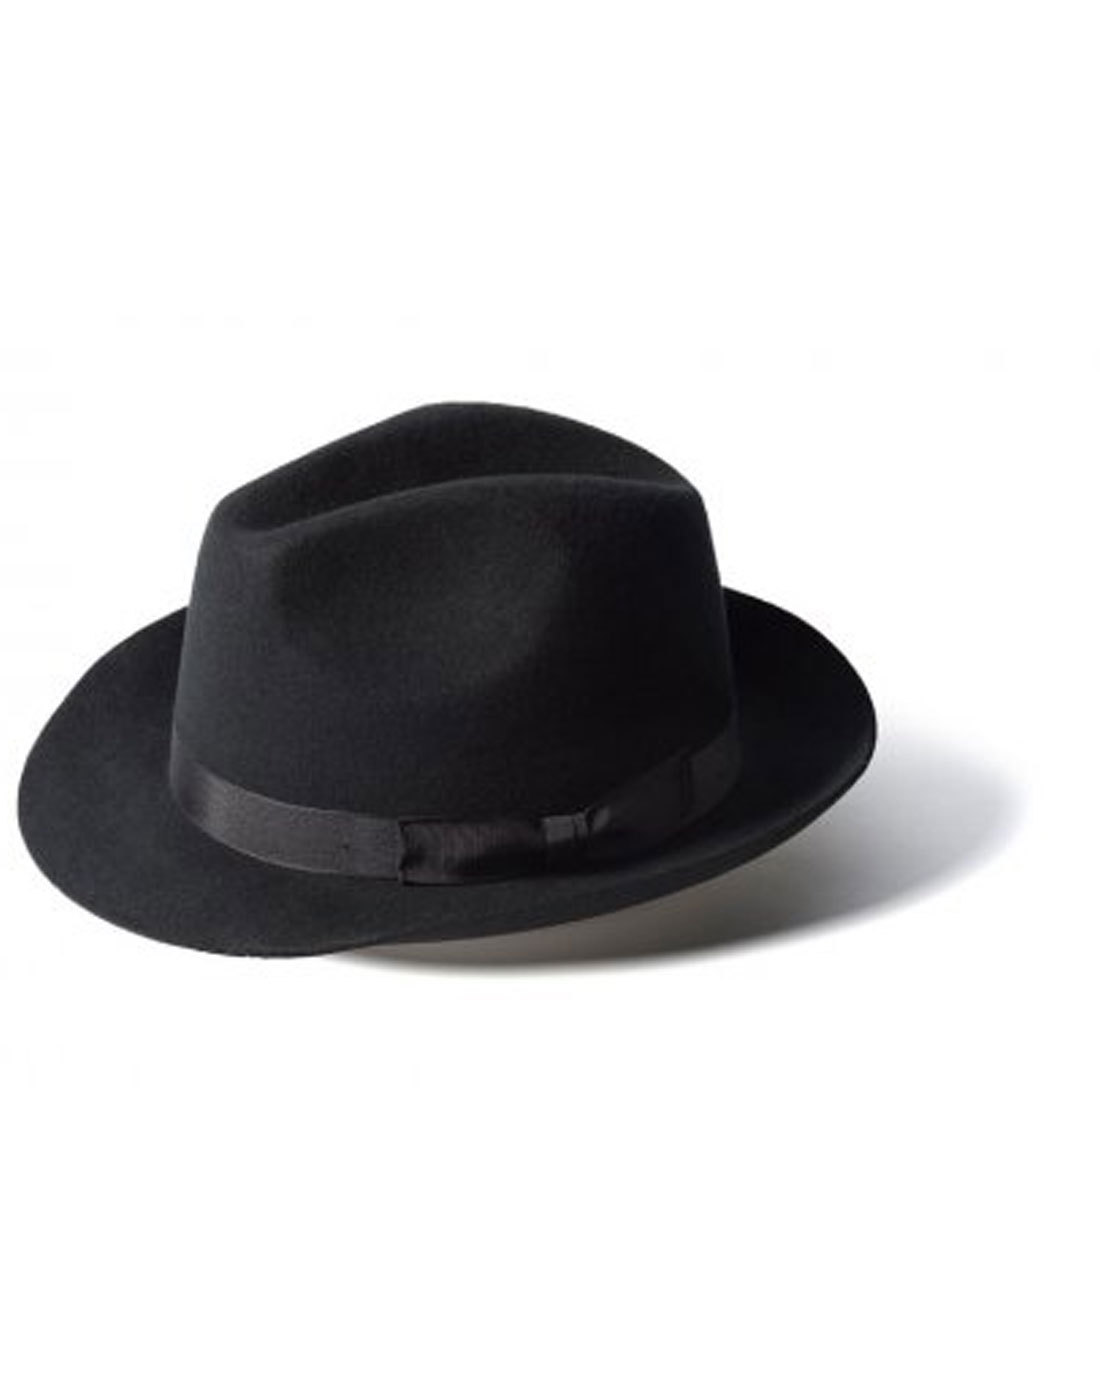 'Doherty' - Indie Trilby Hat (Black)